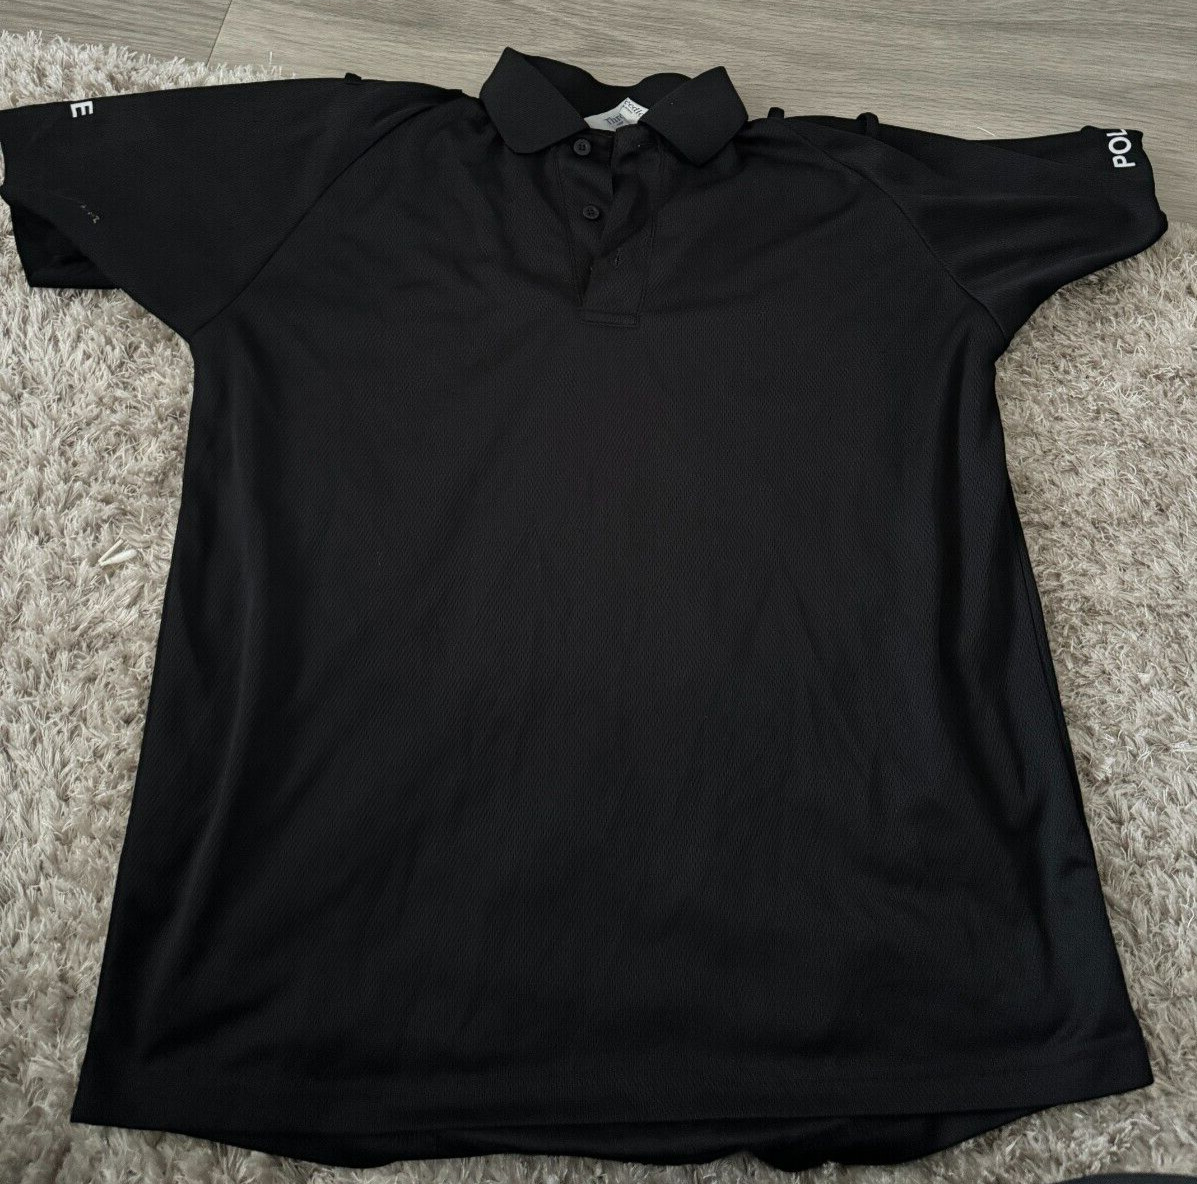 ⭐Ex Police Uniform Black Polo Shirt Ladies M Size 12  Free Post⭐